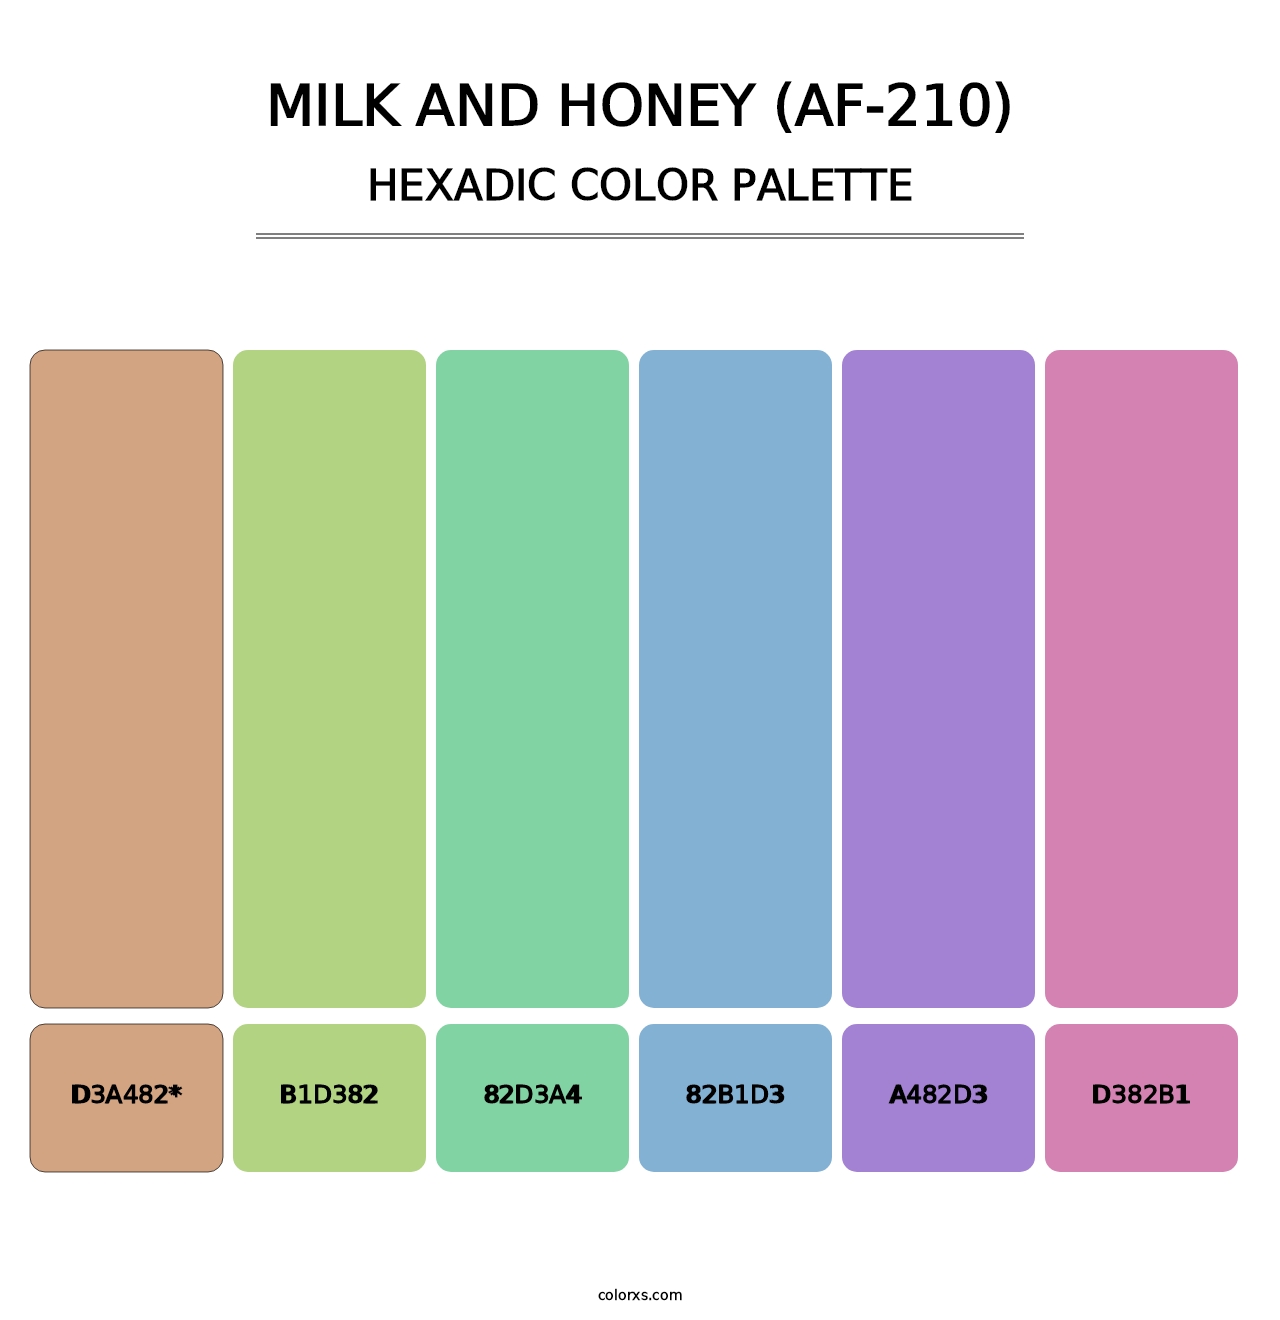 Milk and Honey (AF-210) - Hexadic Color Palette